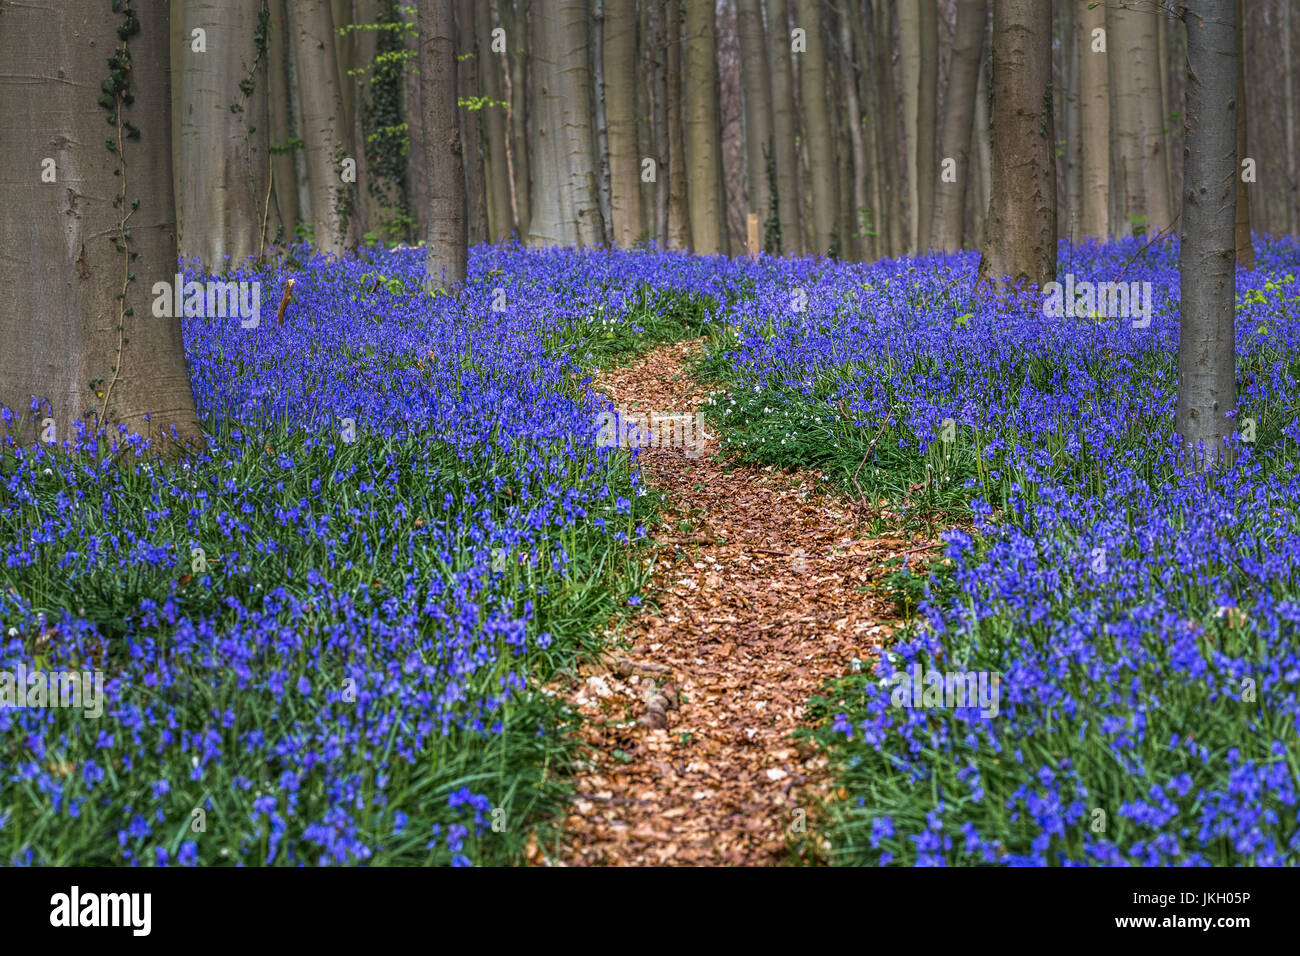 Hallerbos, forêt de hêtres à Halle, près de Bruxelles, Belgique. Tapis naturel plein de blue bells fleurs. Banque D'Images